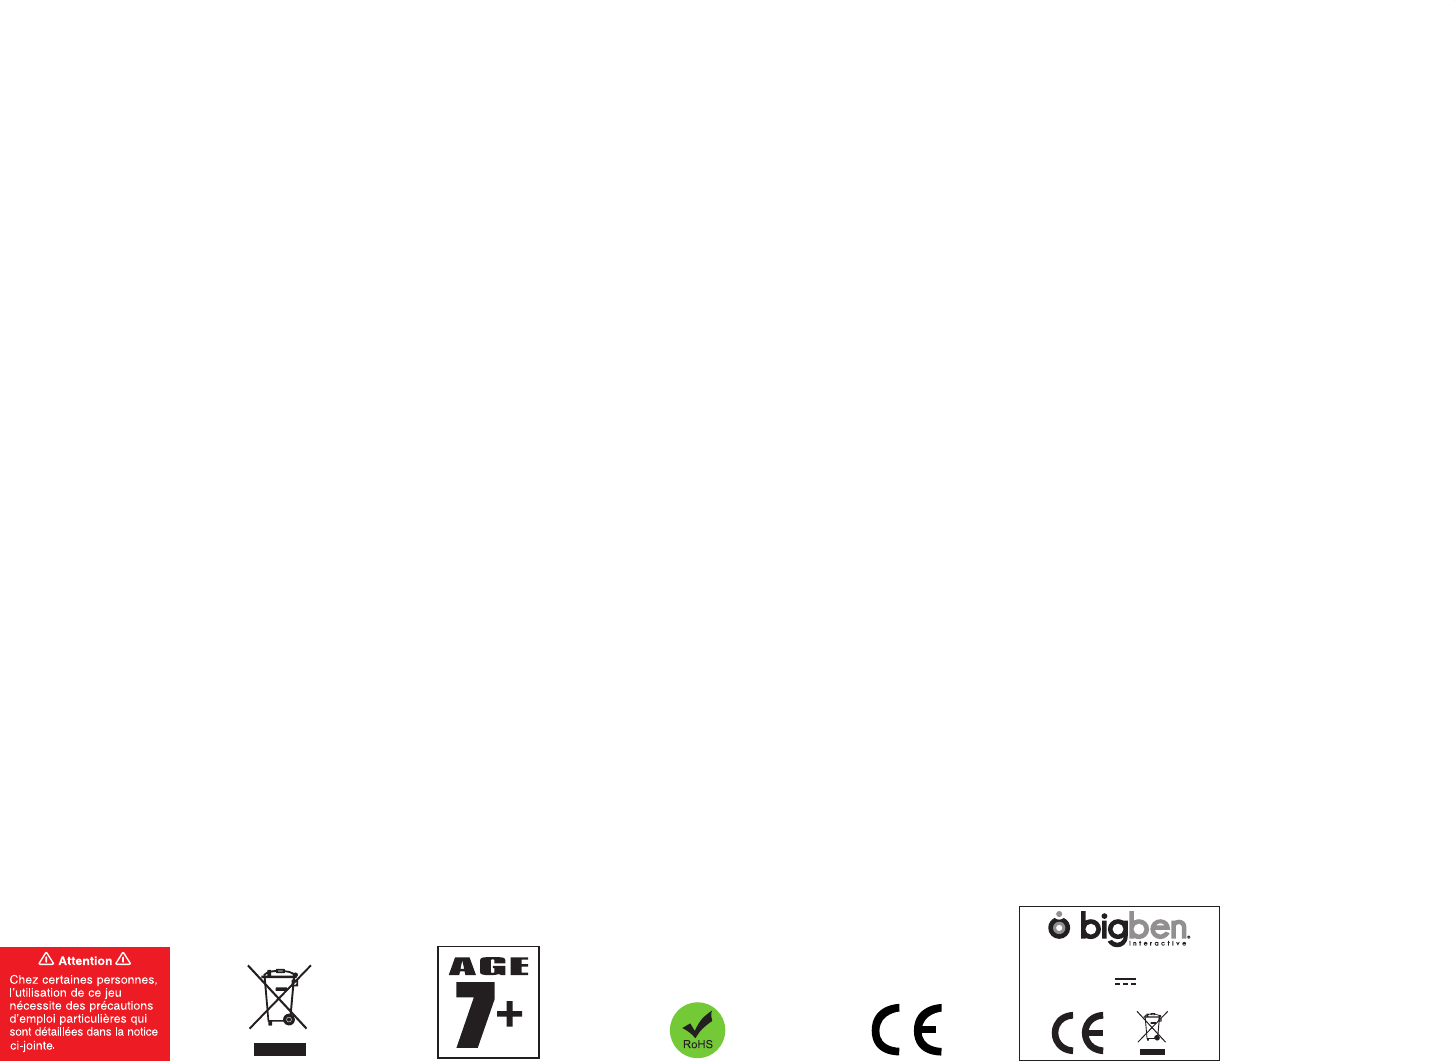 Bigben Interactive 4269 Wii U Cyberbike User Manual Ftp Ib Wii U Cyberbike Indd